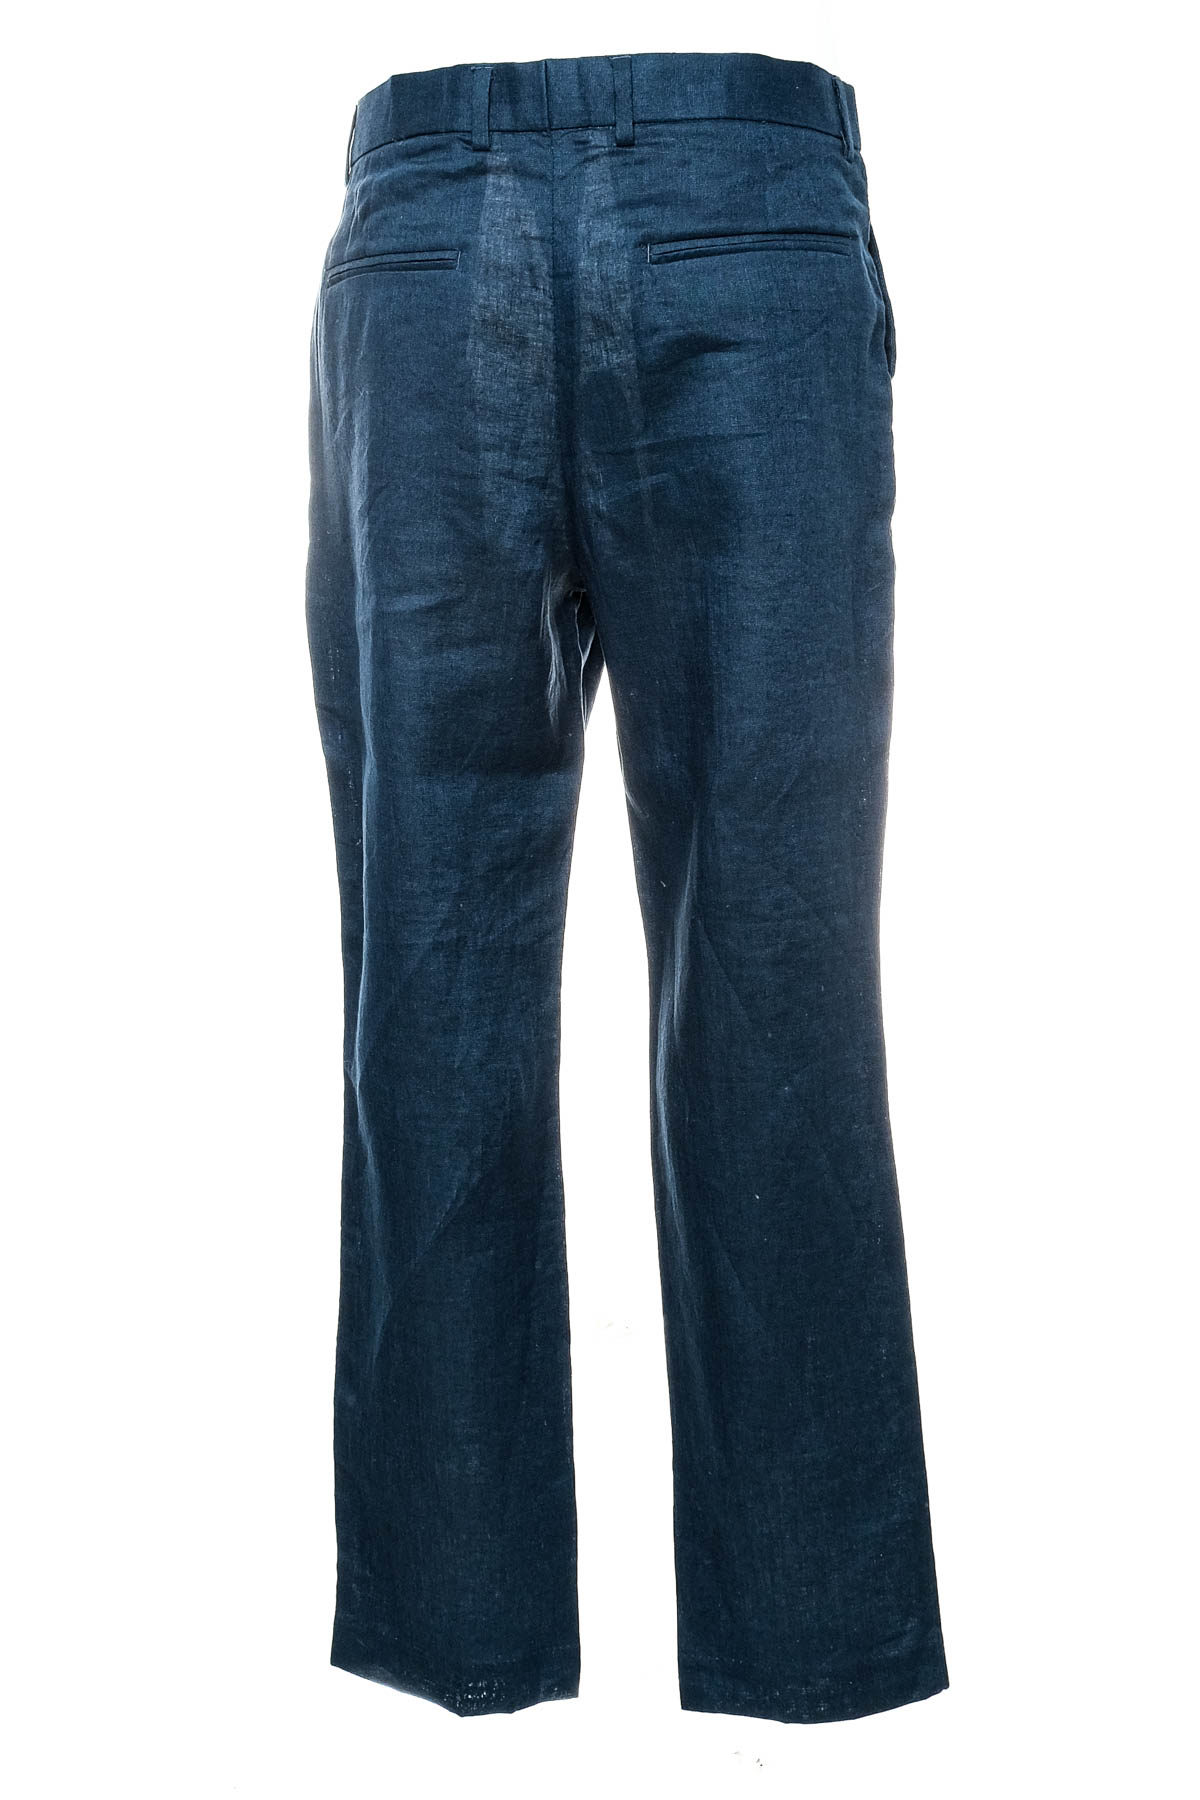 Ανδρικά παντελόνια - H&M - 1